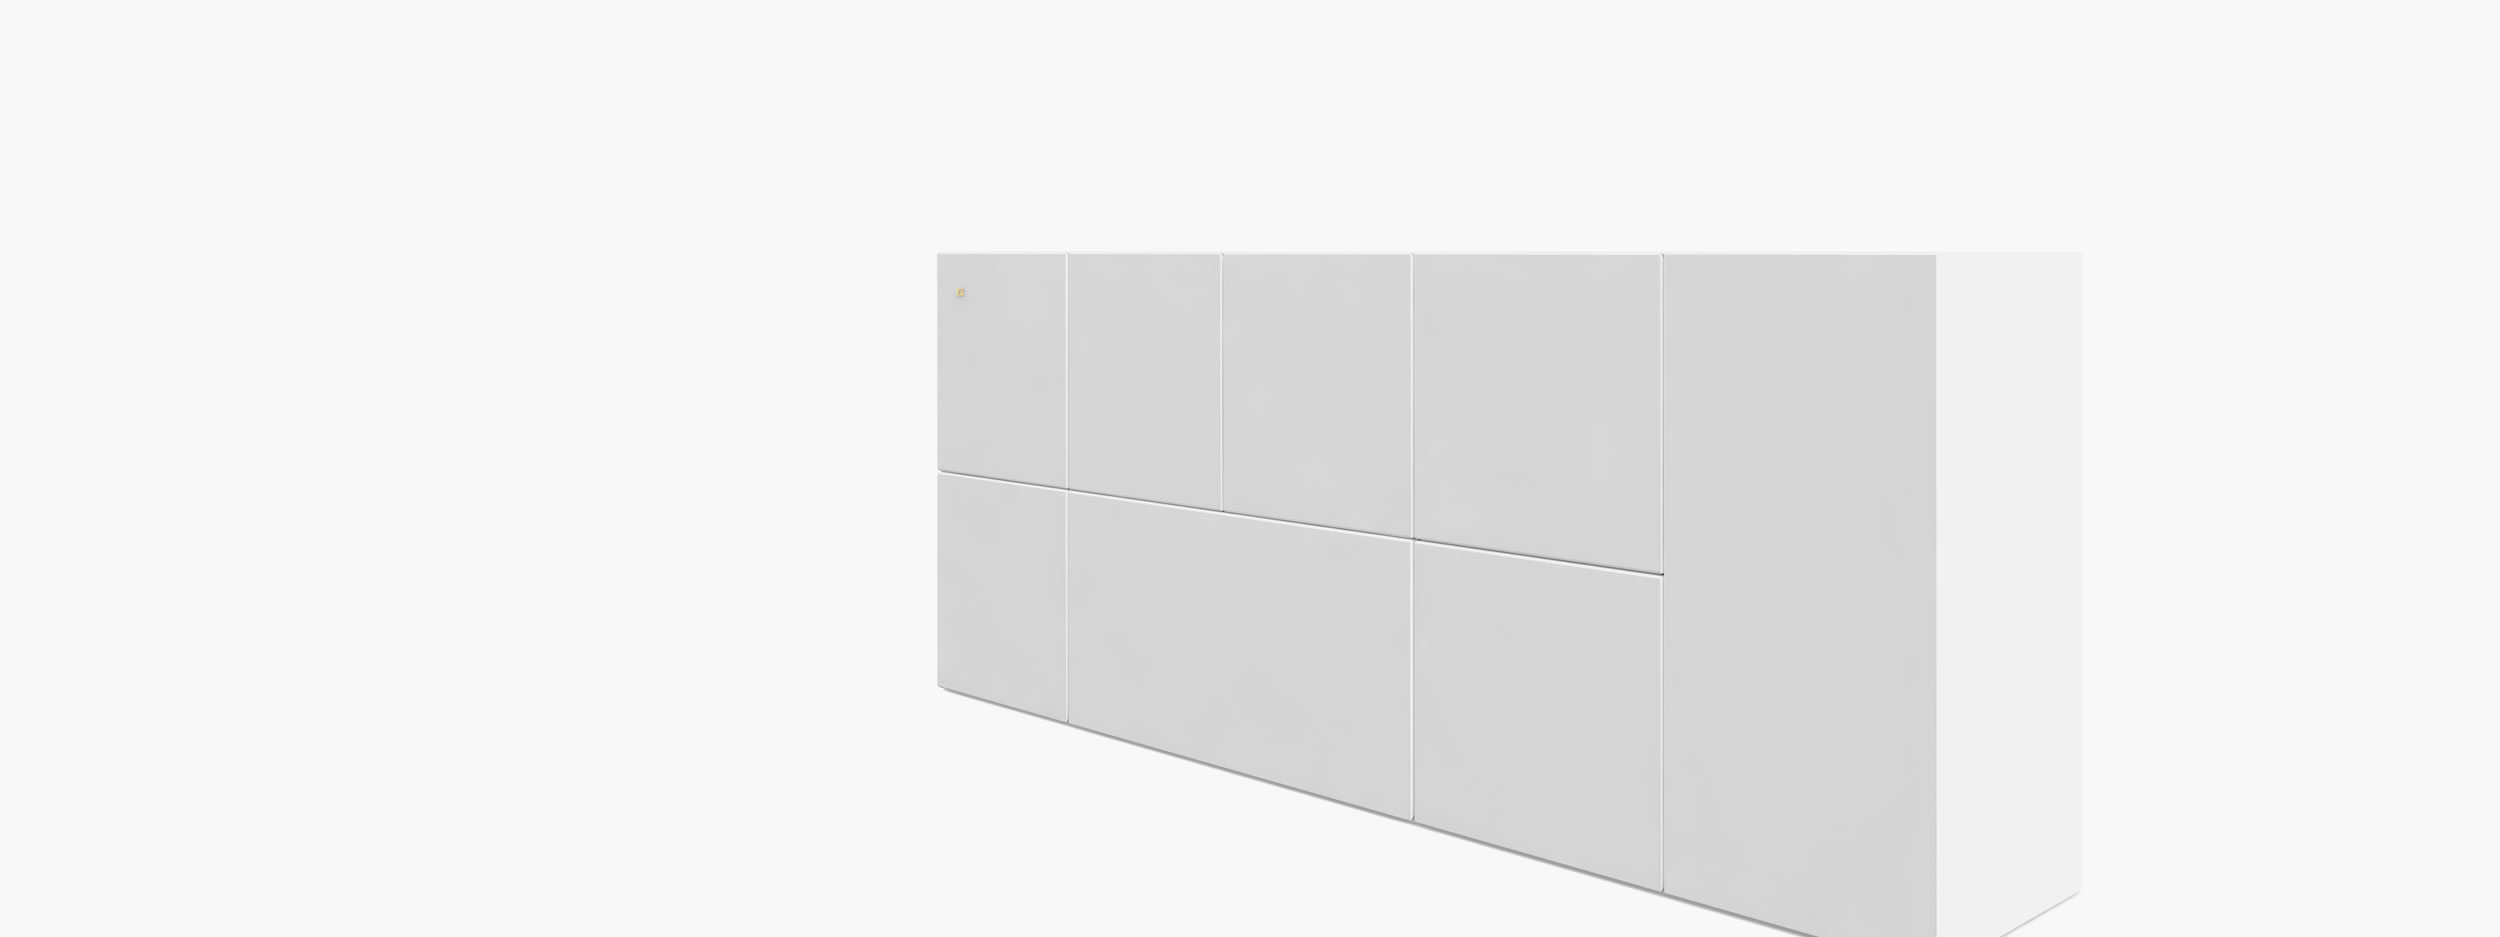 Sideboard aus Kuben weiss residentialdesign Wohnzimmer collectors Konsolen  Sideboards FS 21 a FELIX SCHWAKE RECHTECK